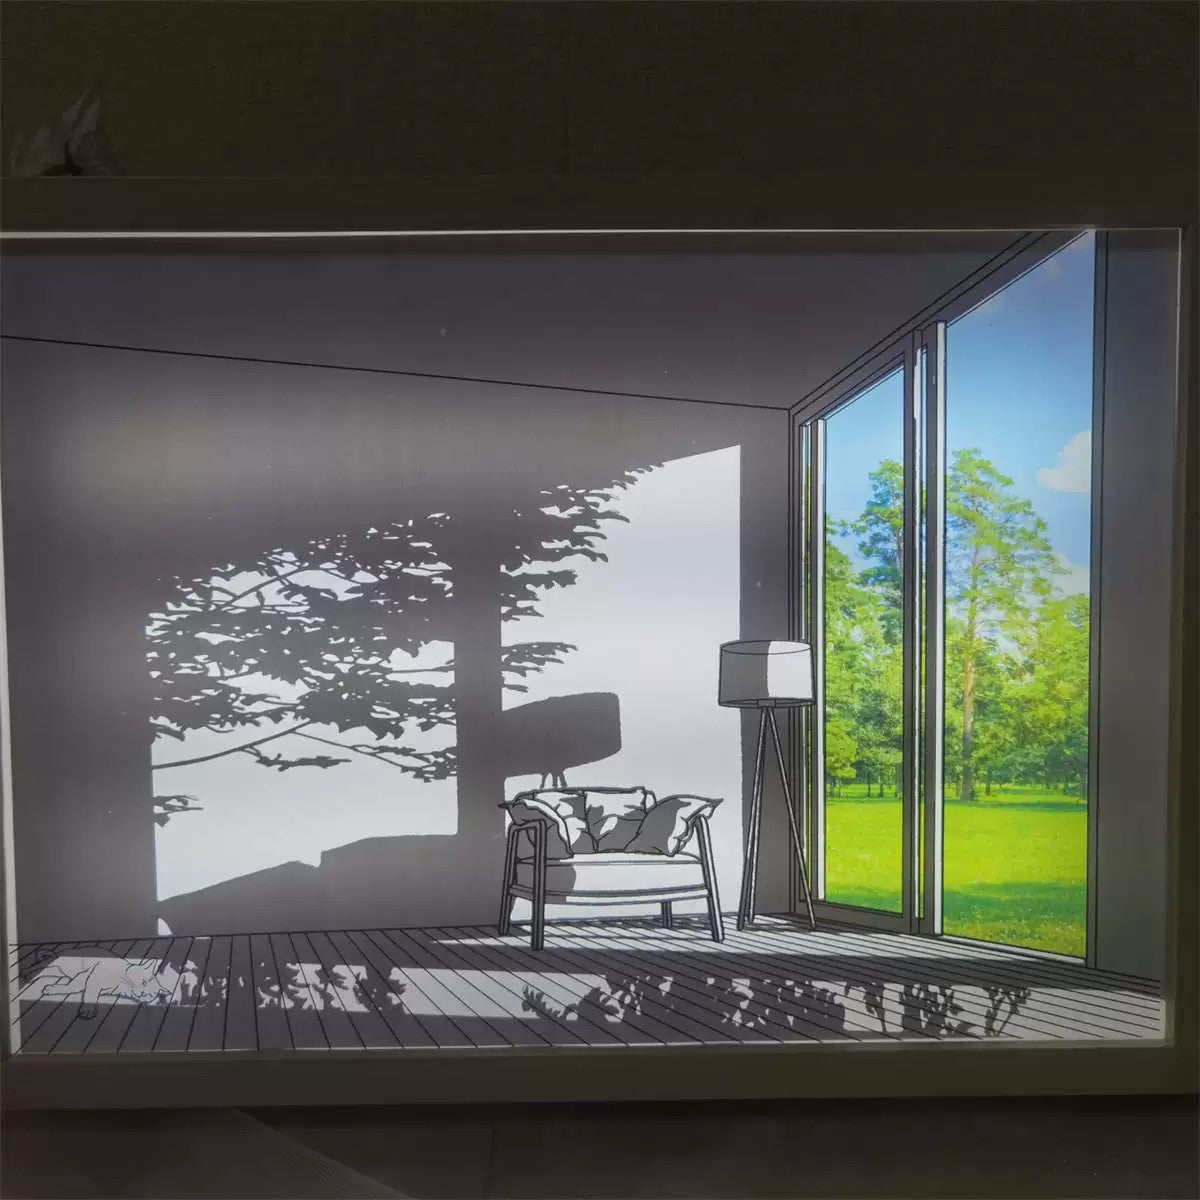 INSNIC Artwork Homedecor Gift House Series Of Light Painting